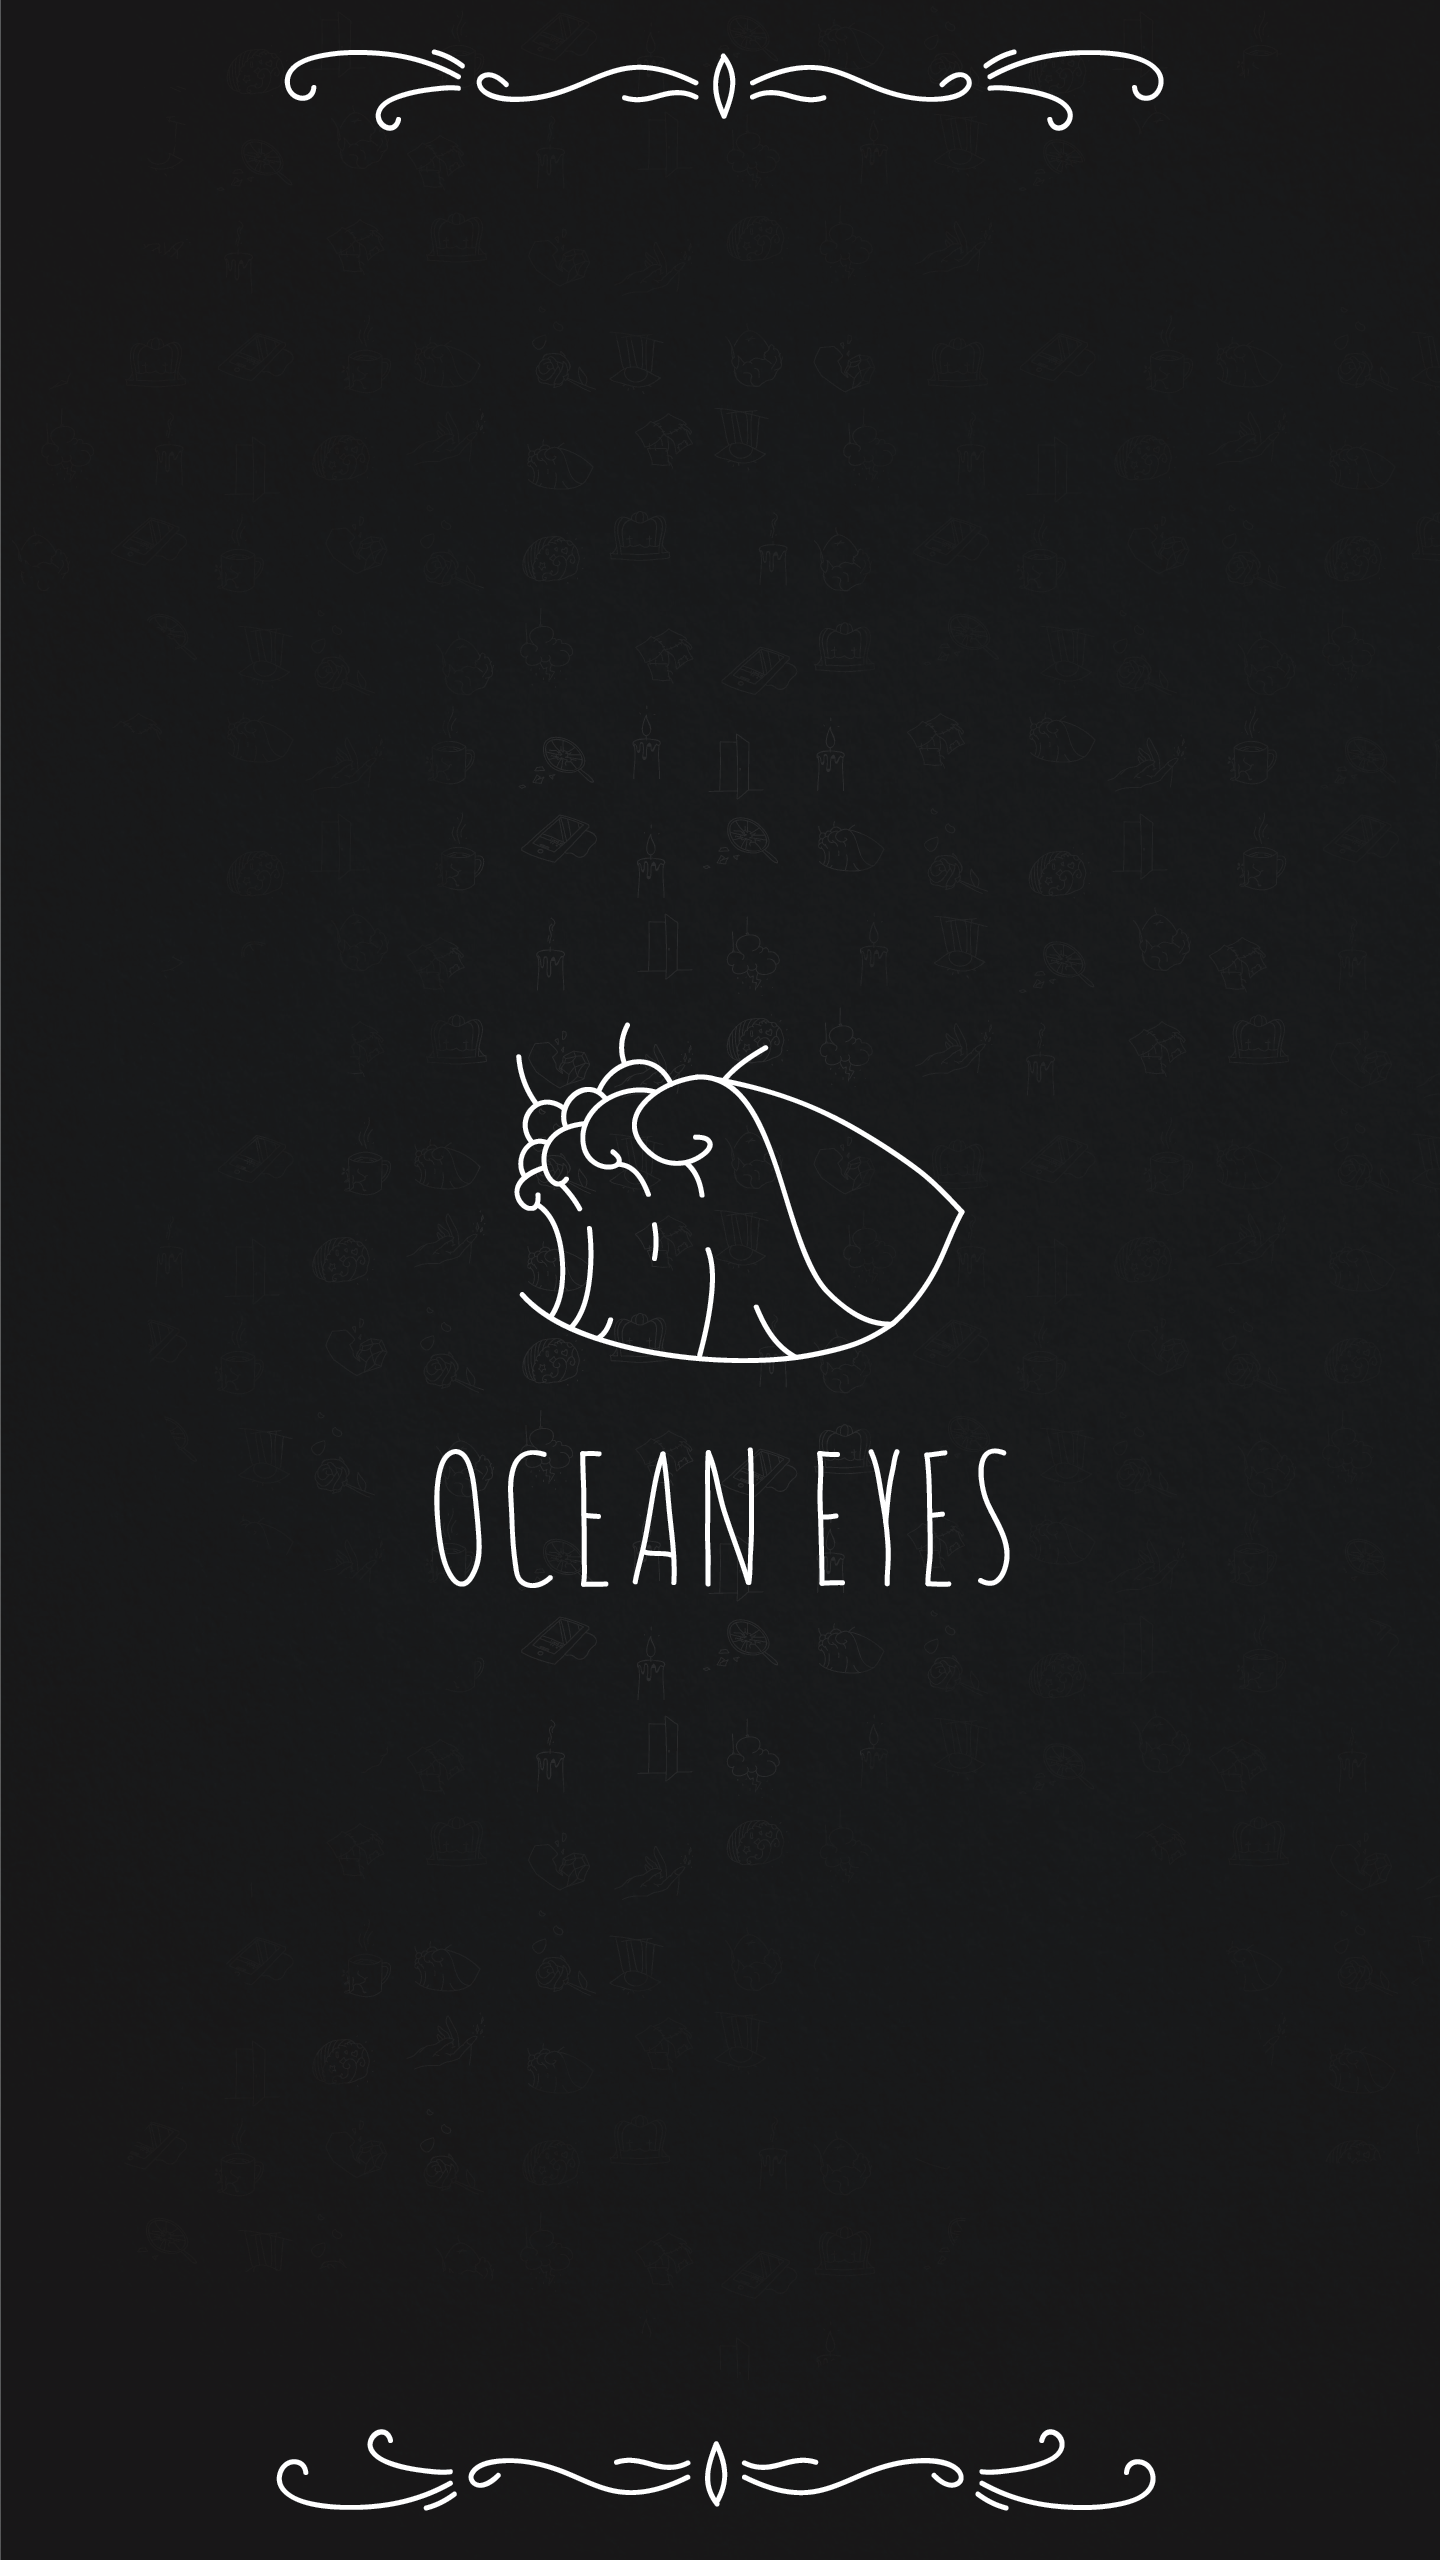 Ocean Eyes Aesthetic Wallpapers